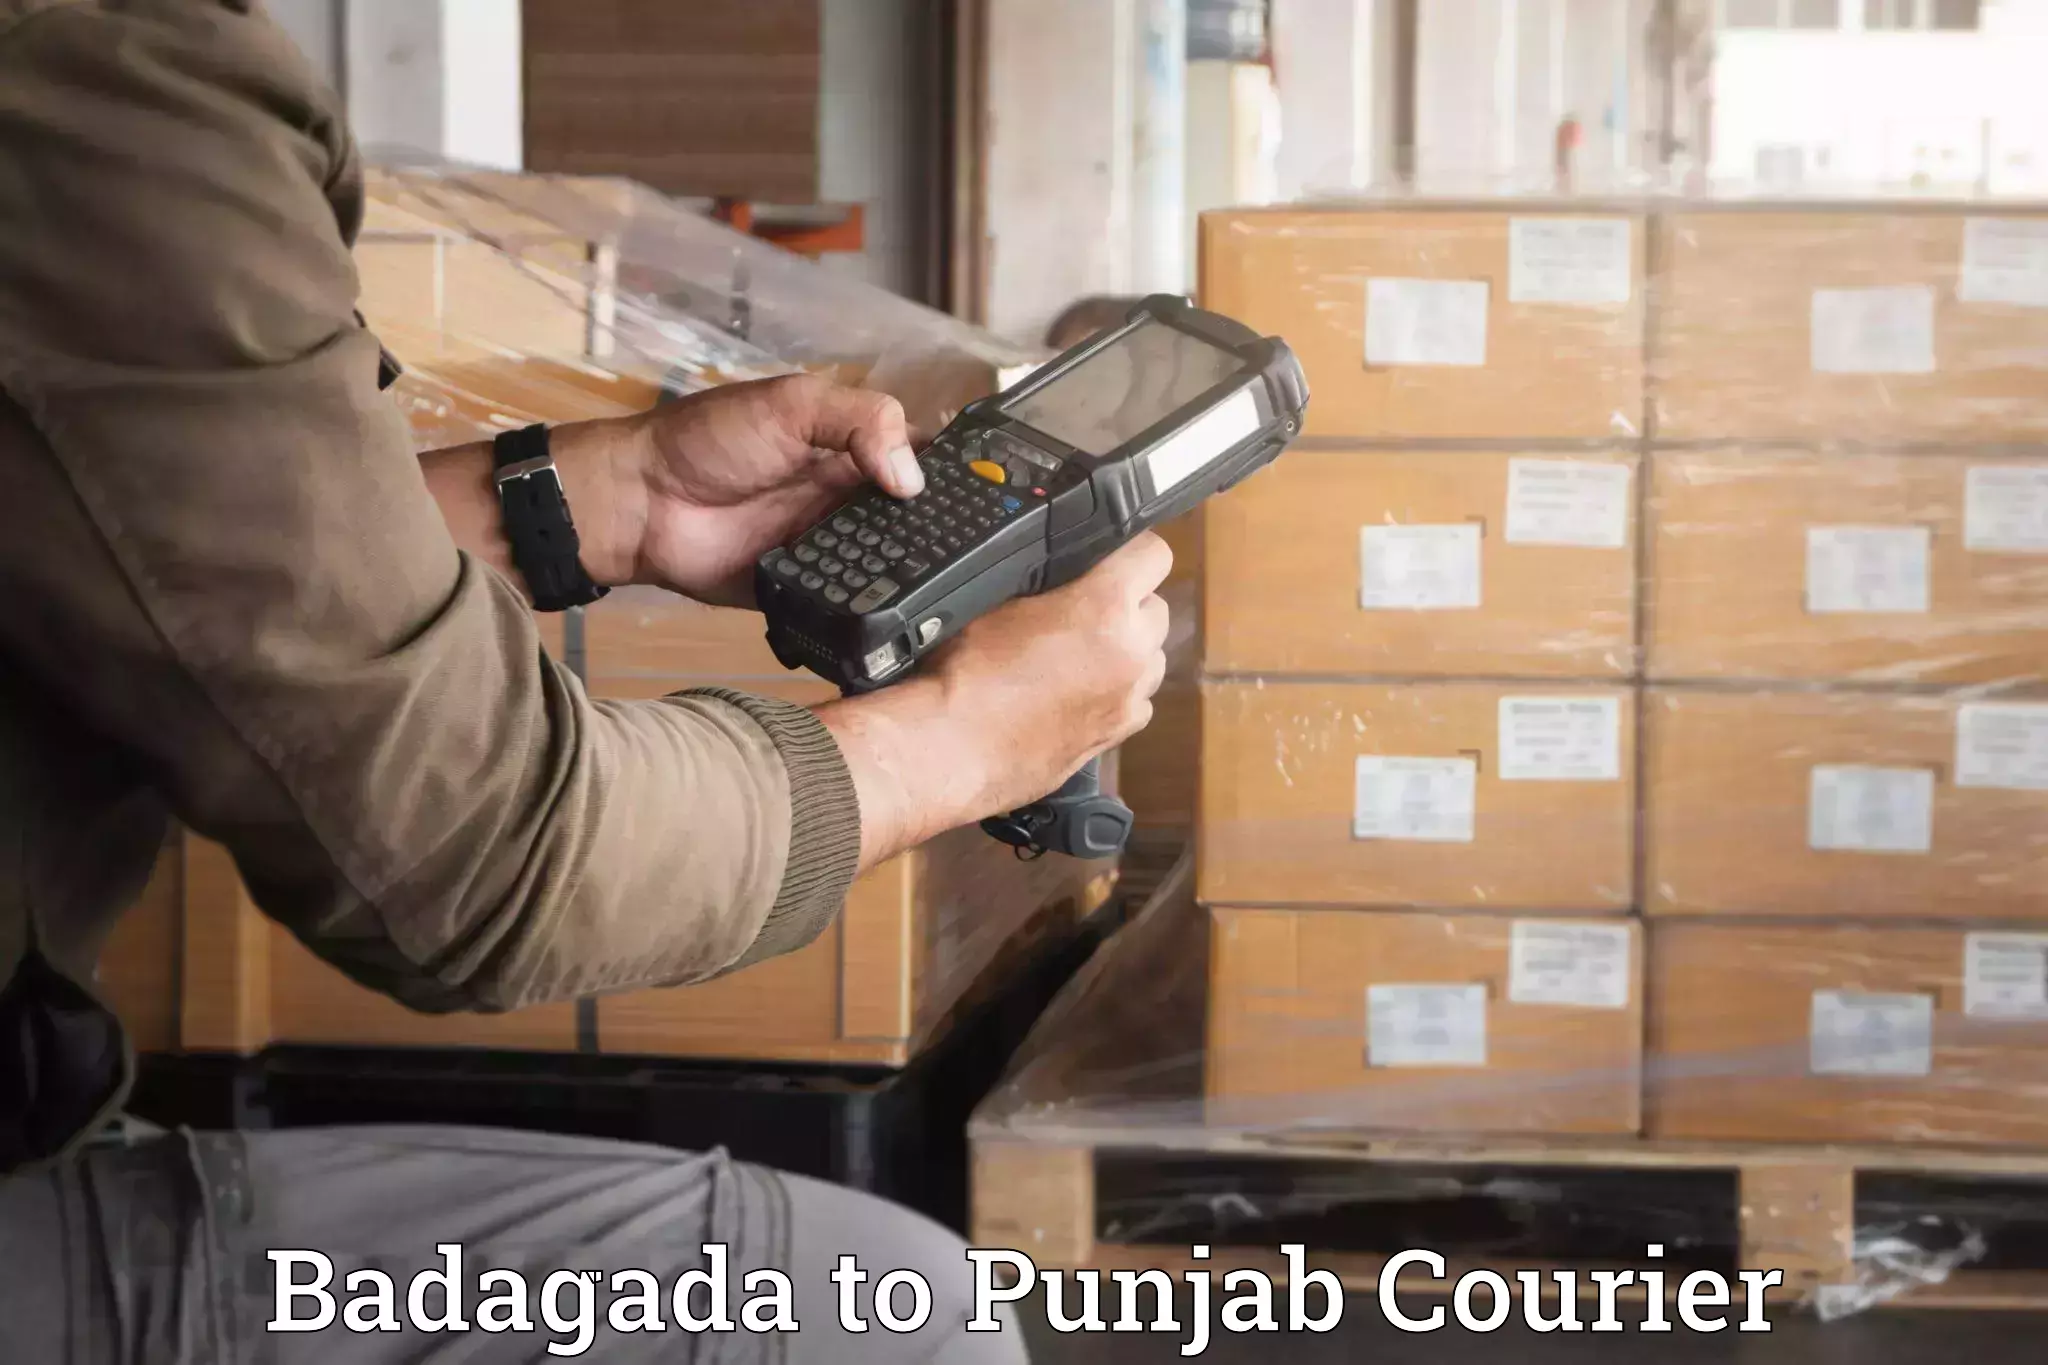 Quality household movers Badagada to Central University of Punjab Bathinda